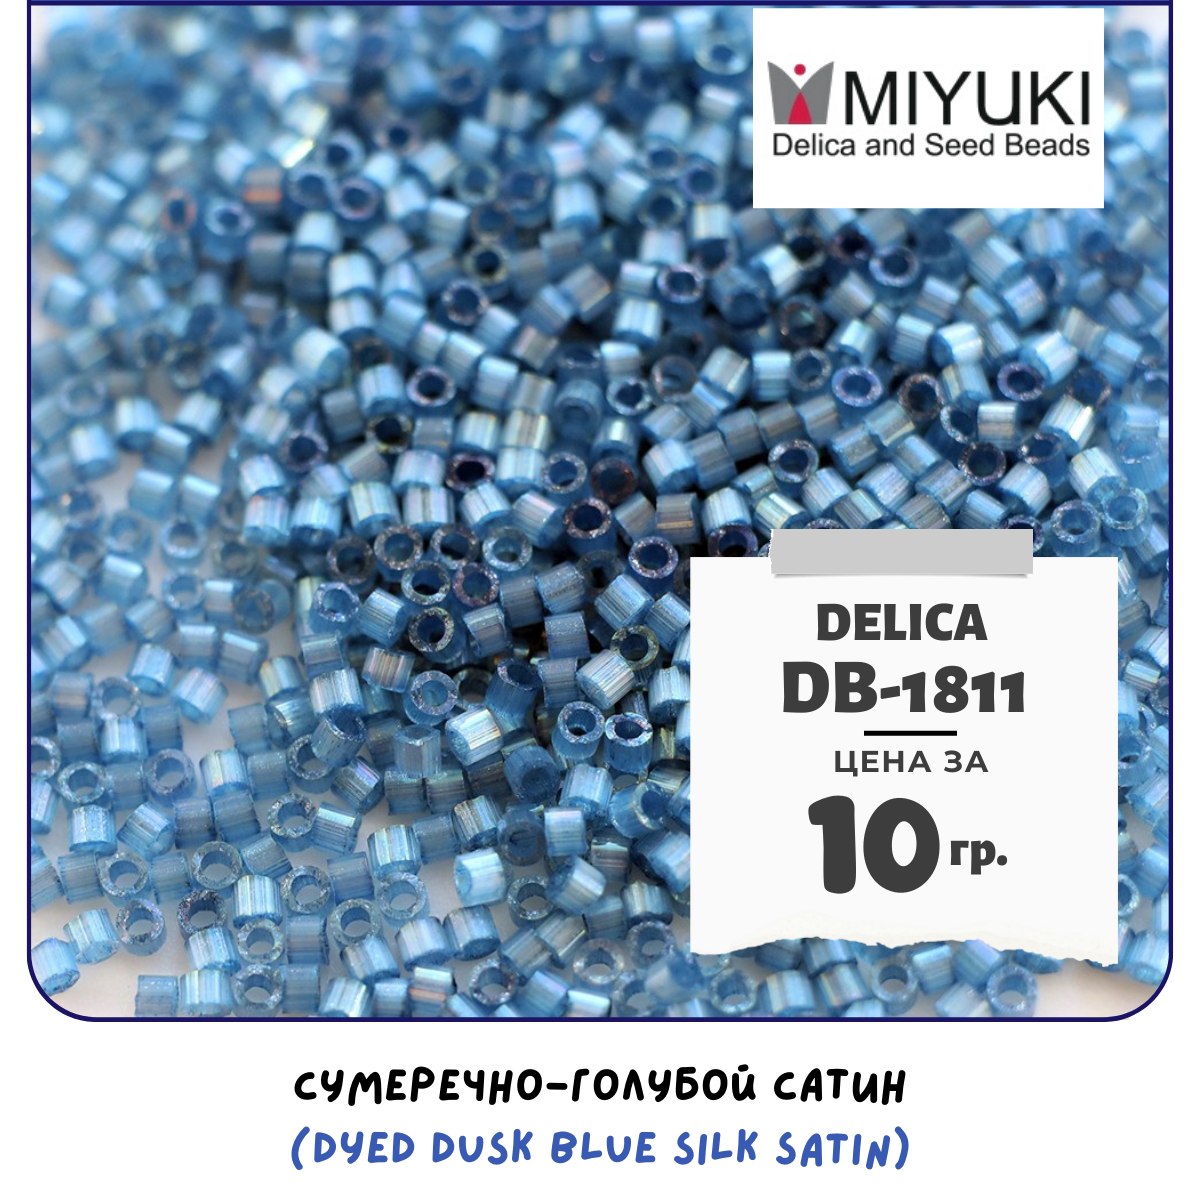 Бисер японский MIYUKI 10 гр Миюки цилиндрический Delica Делика 11/0 размер 11 DB-1811 цвет сумеречно-голубой сатин (Dyed Dusk Blue Silk Satin)